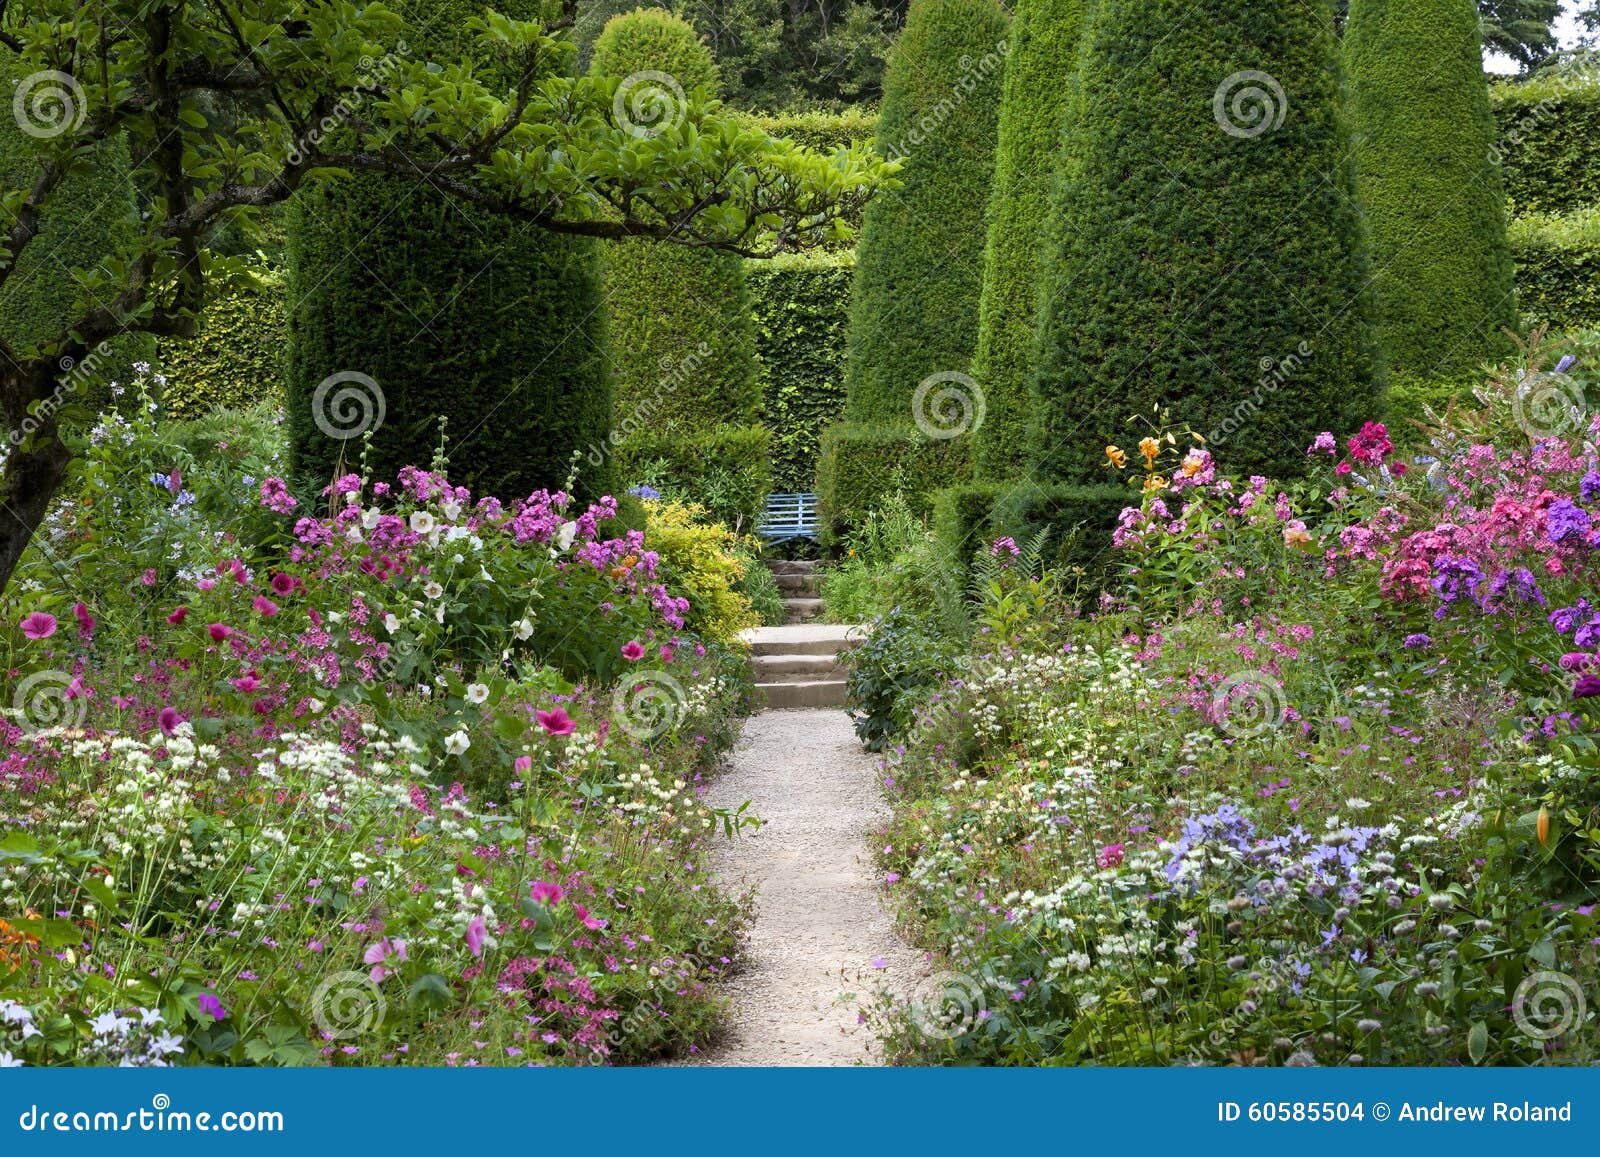 English Cottage Garden Stock Photo Image Of Cottage 60585504